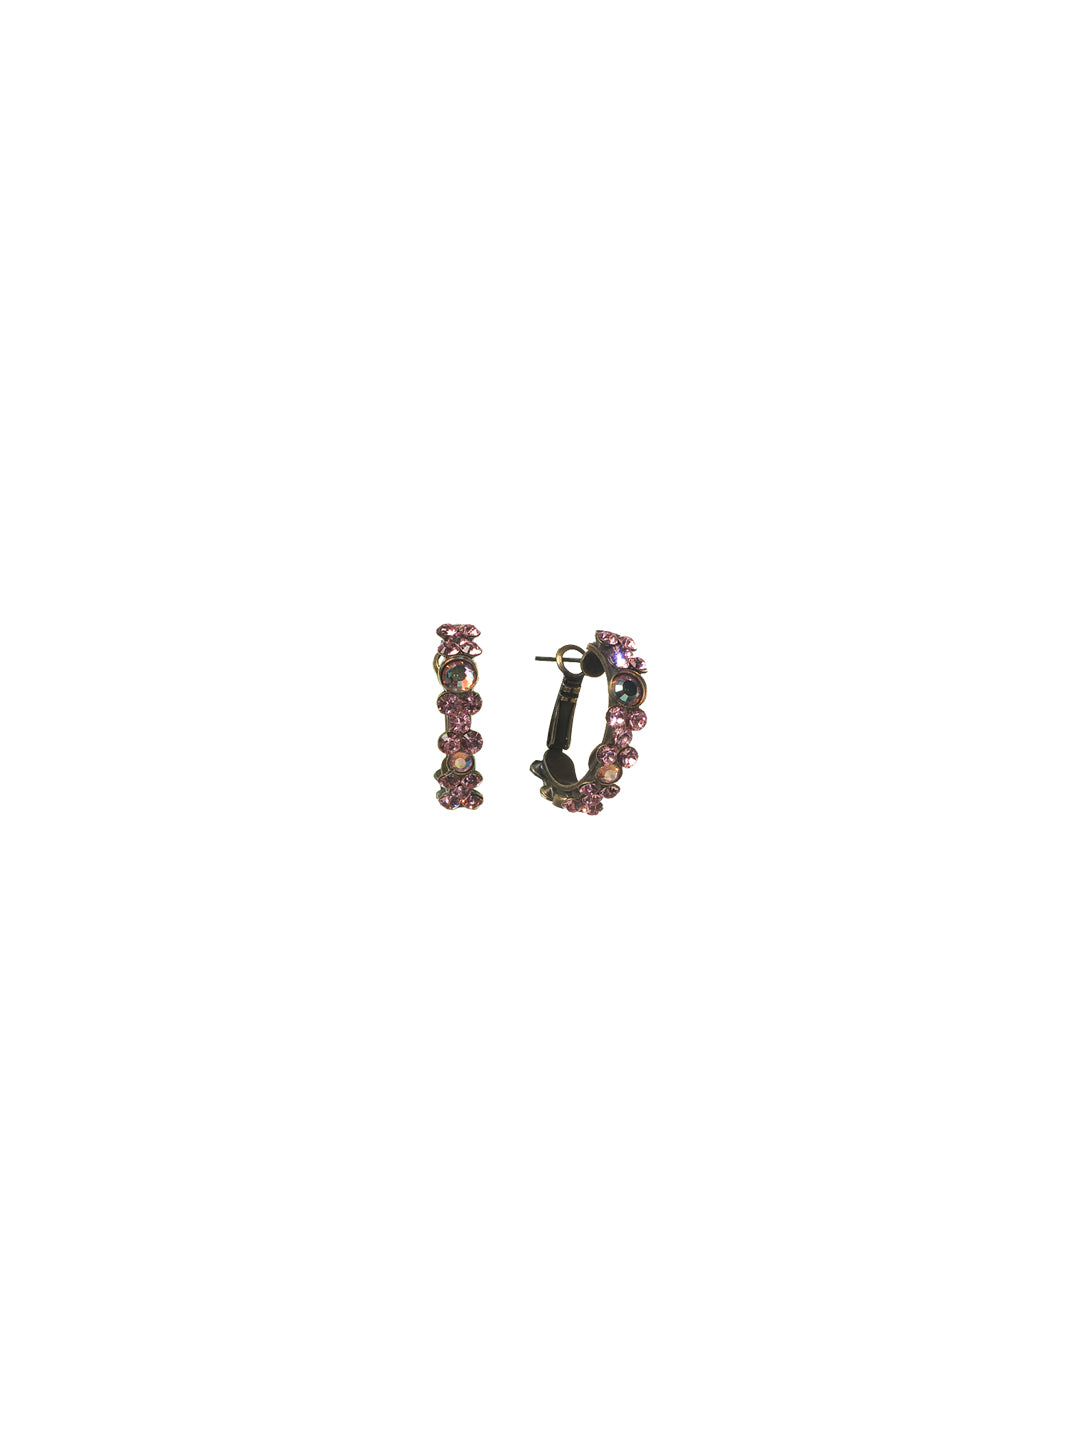 Floral Hoop Earrings - EBP15AGLTR